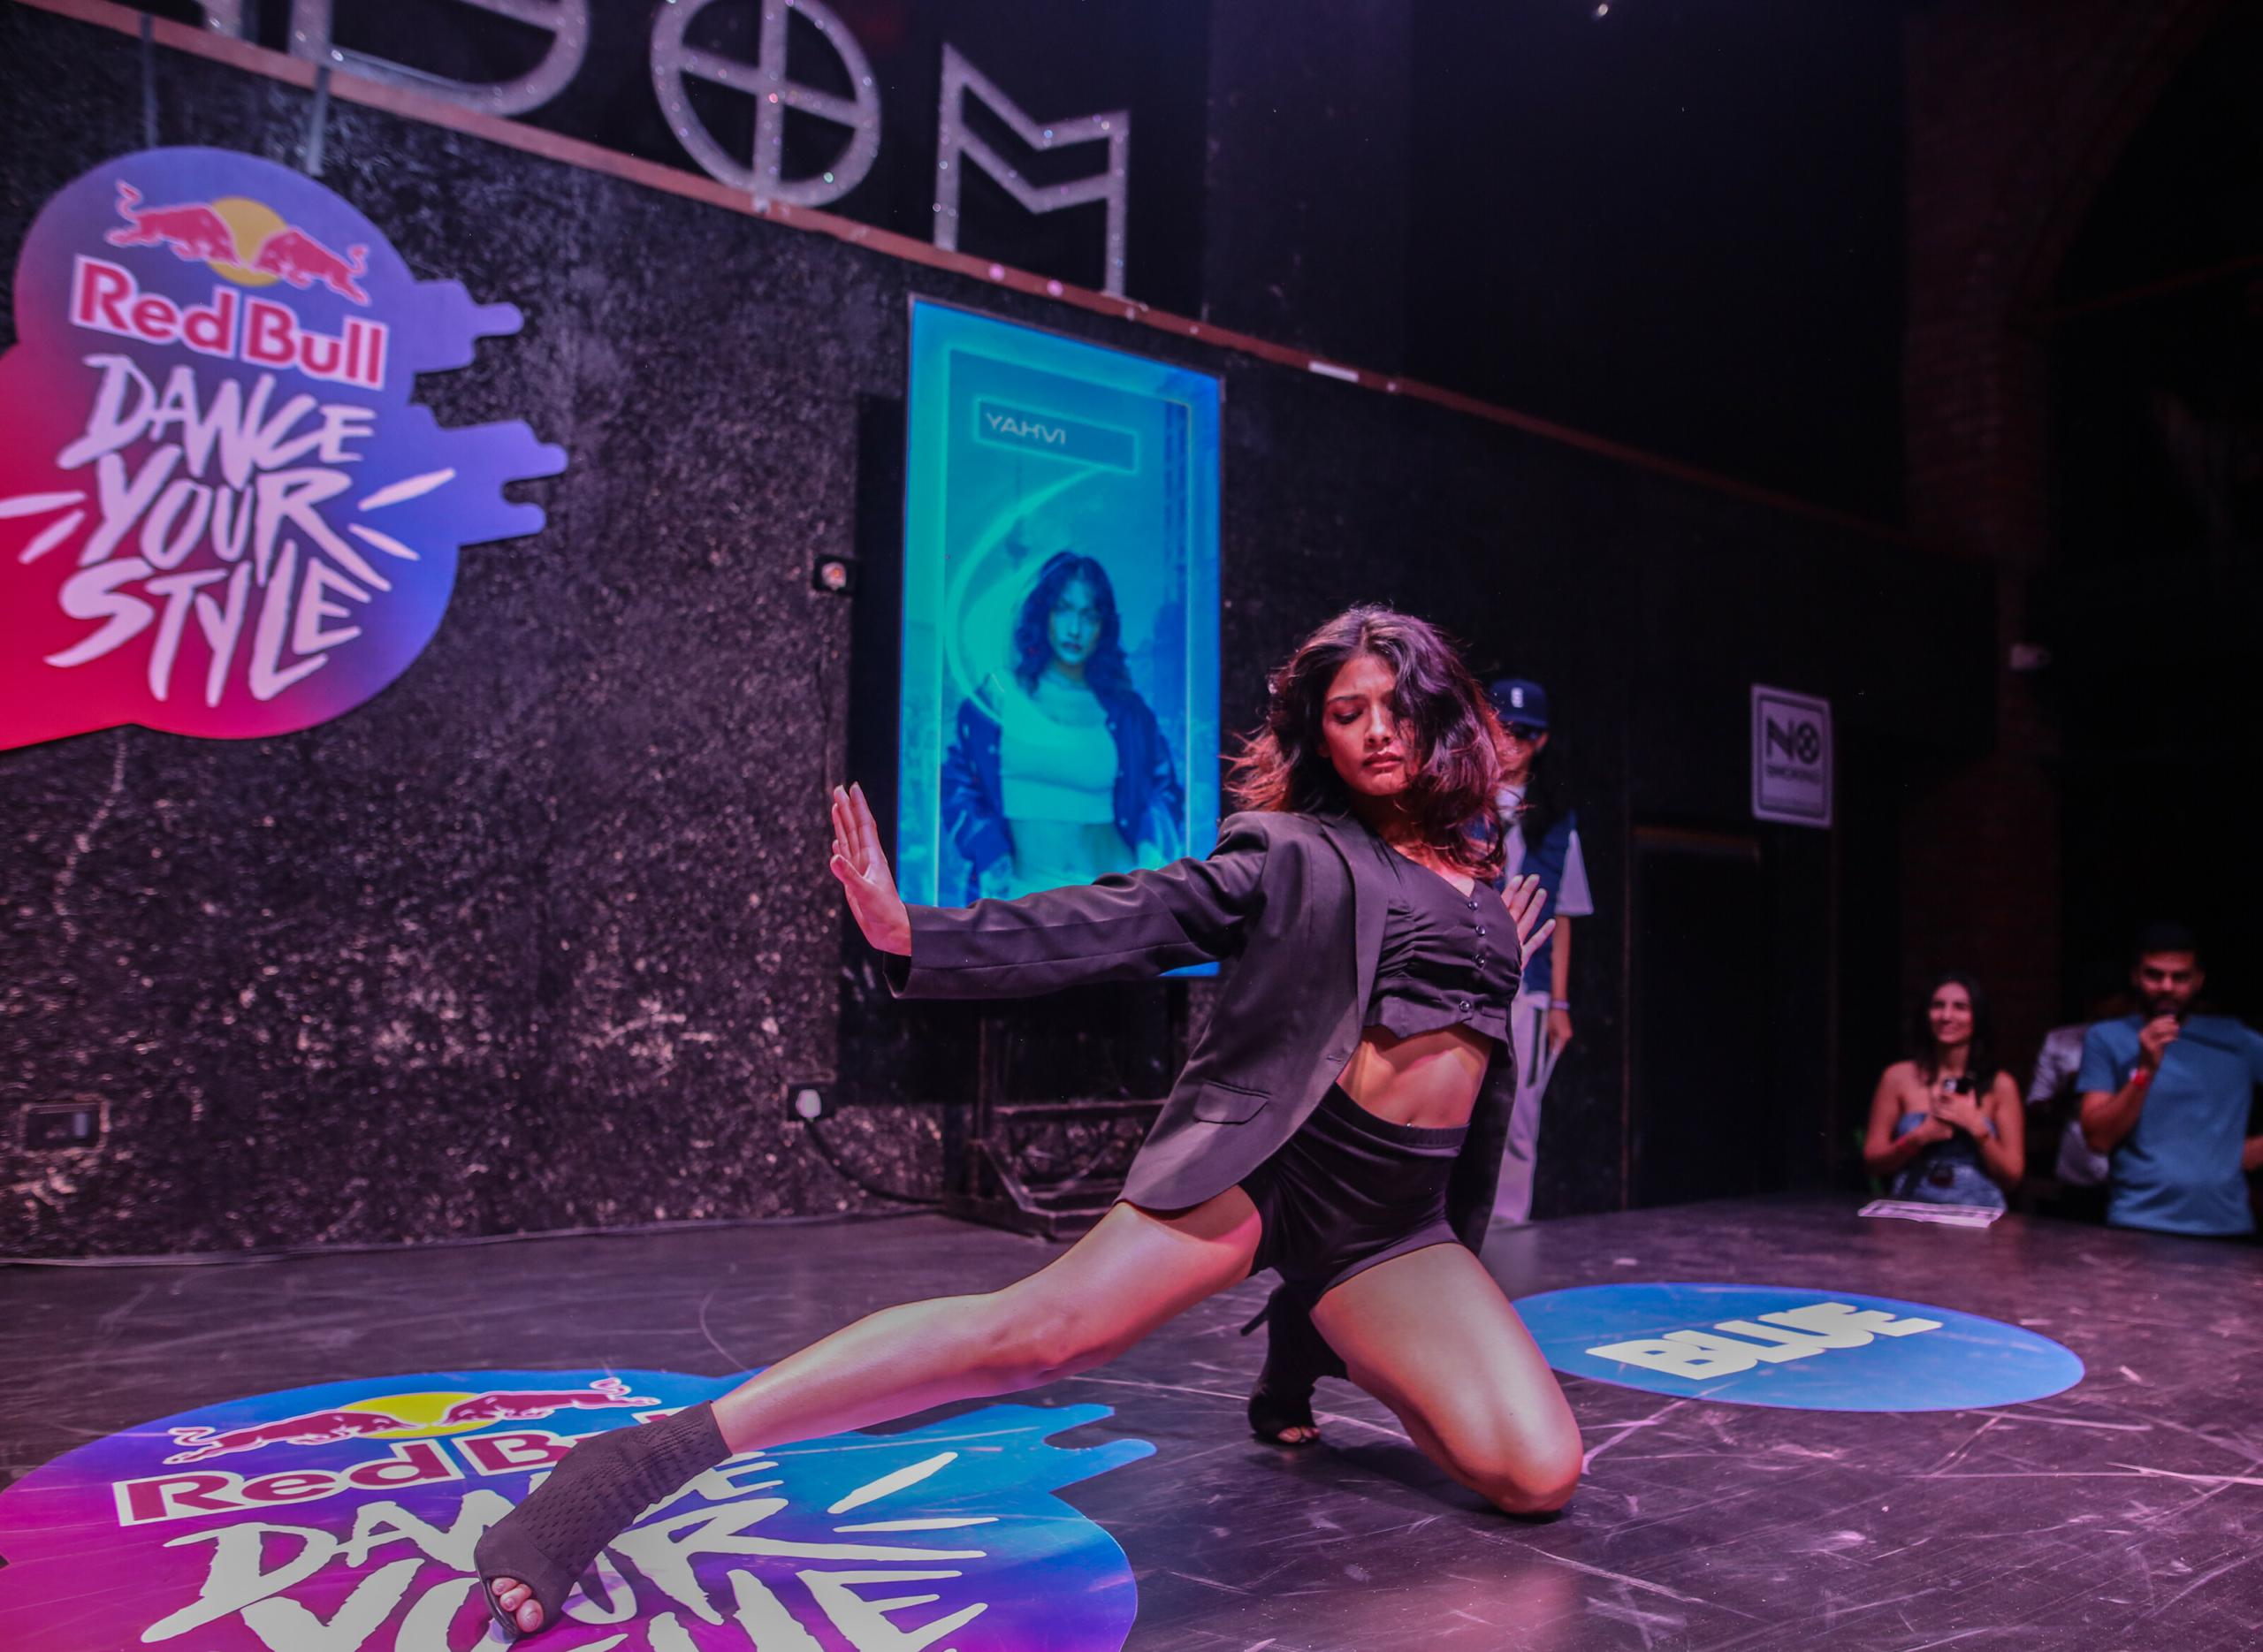 Rio recebe competição Dance Your Style neste sábado (22)